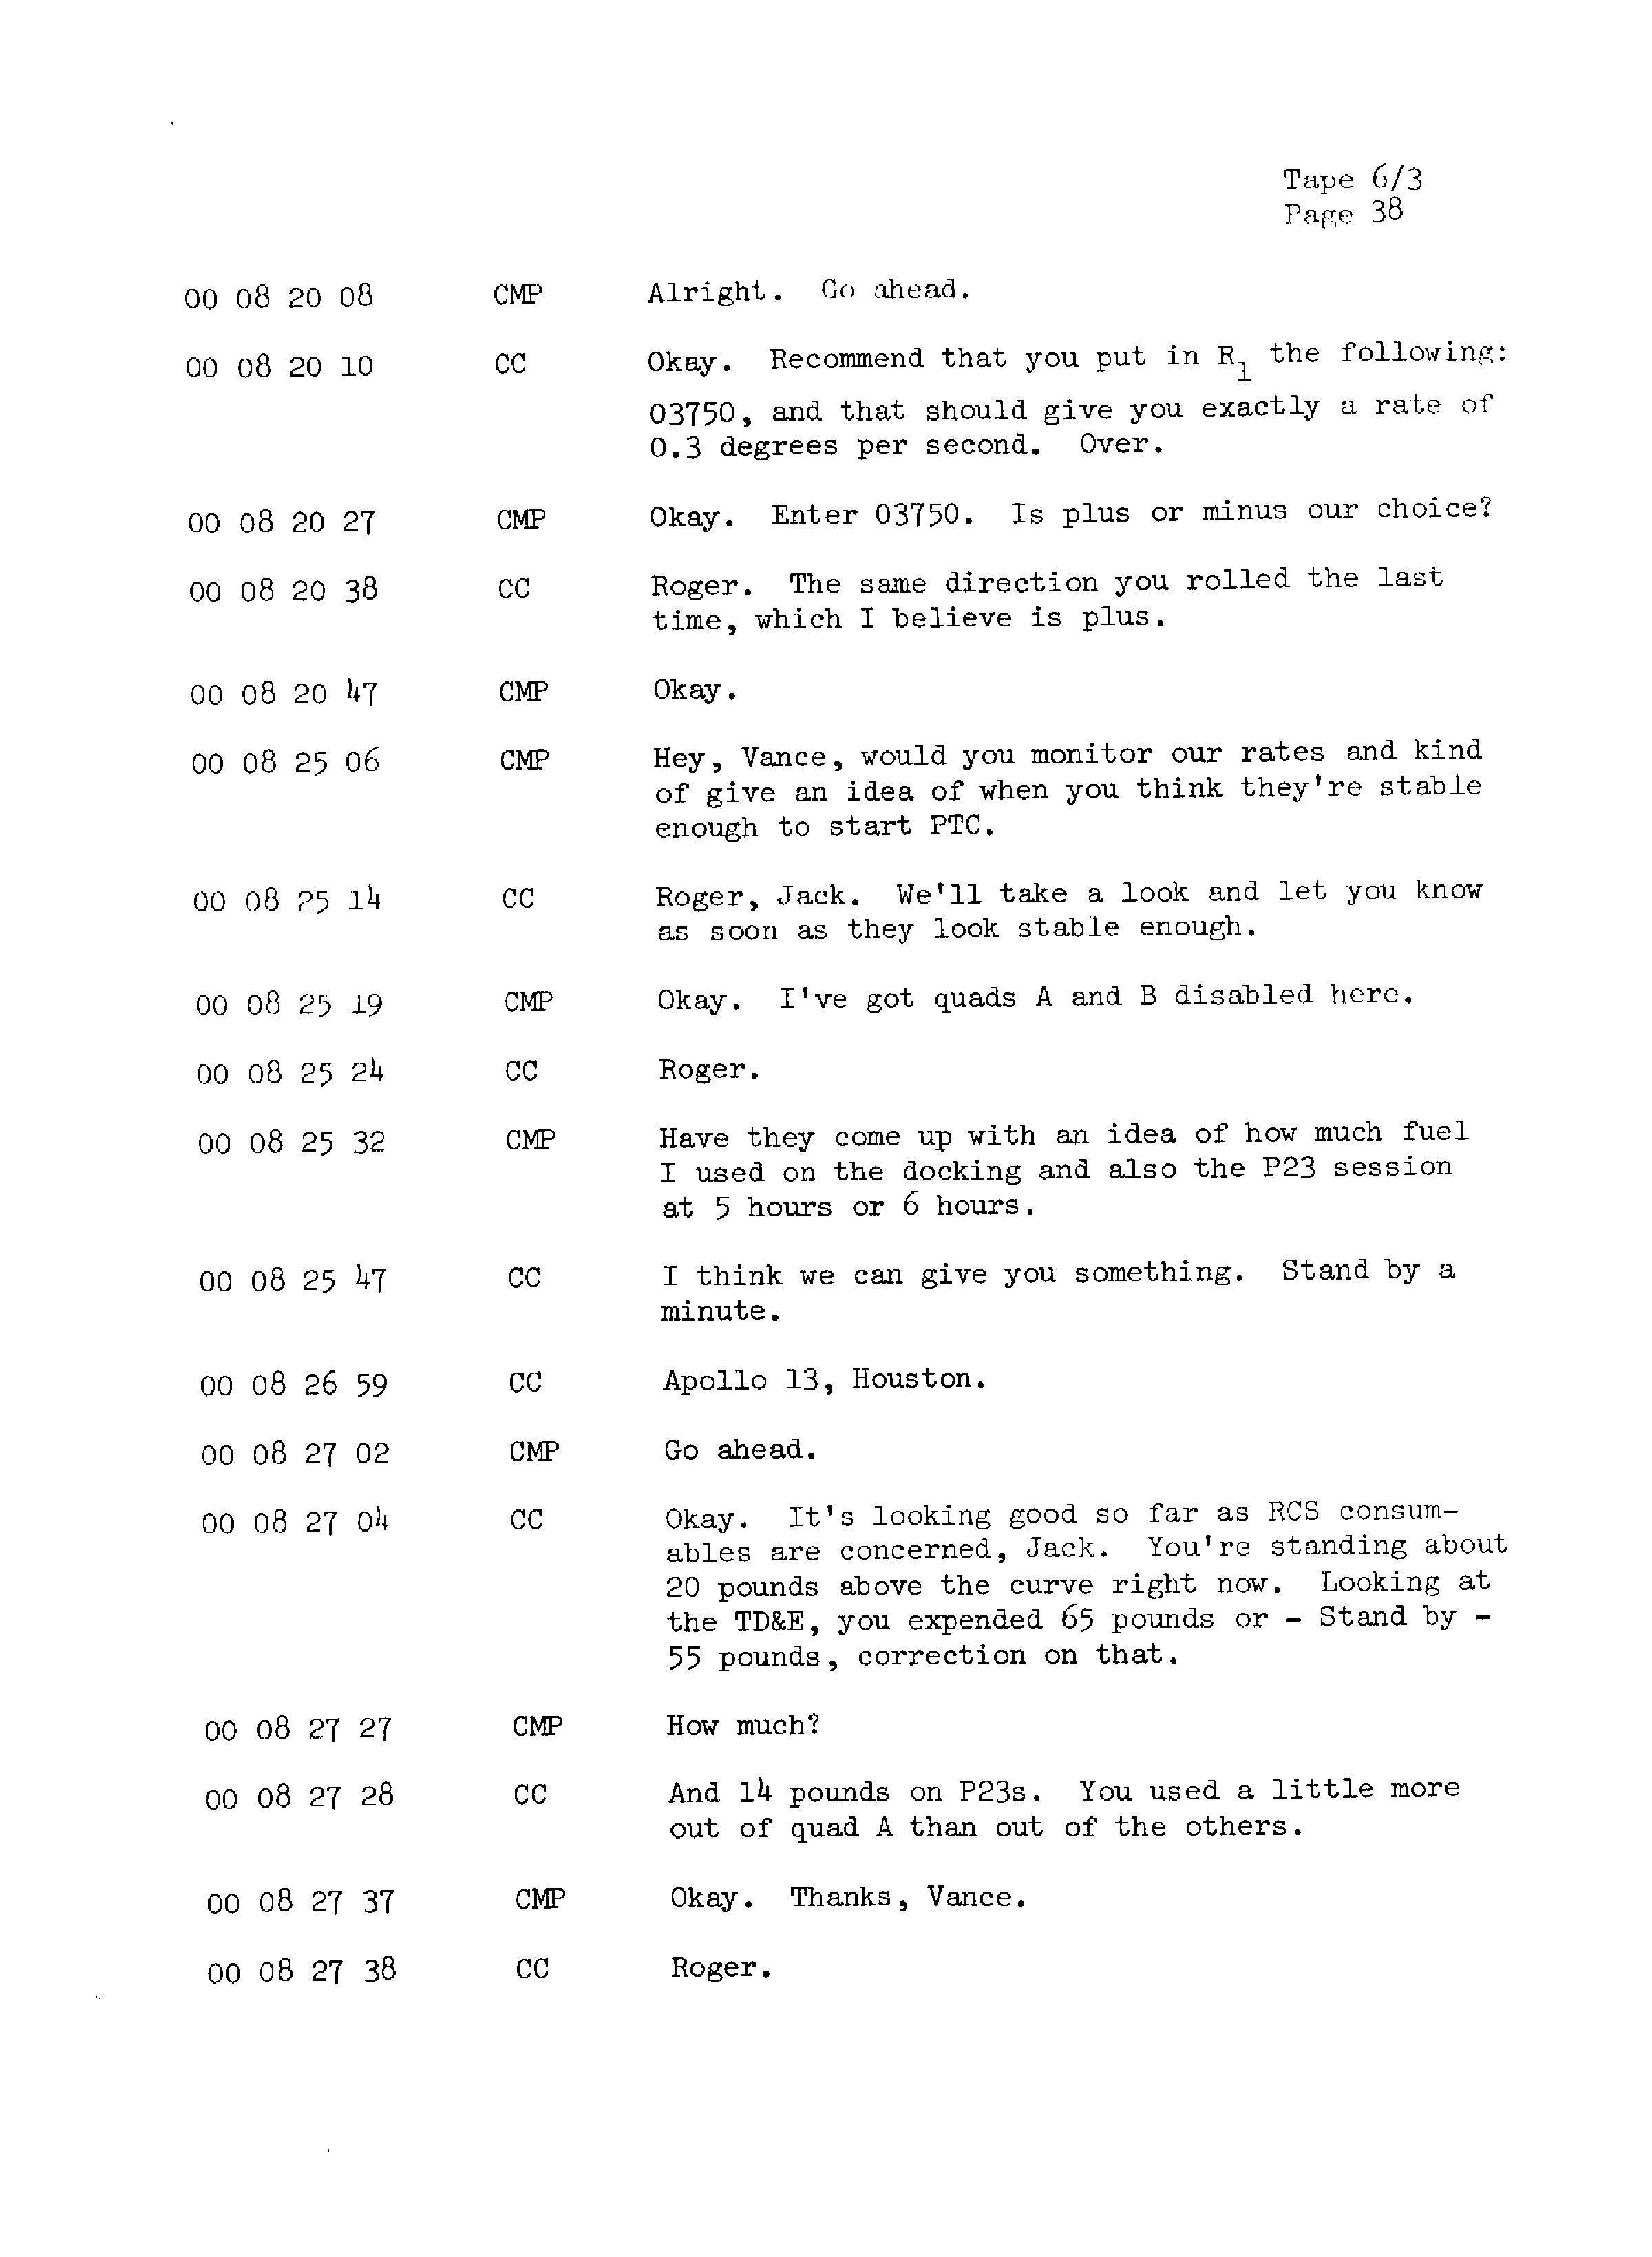 Page 45 of Apollo 13’s original transcript